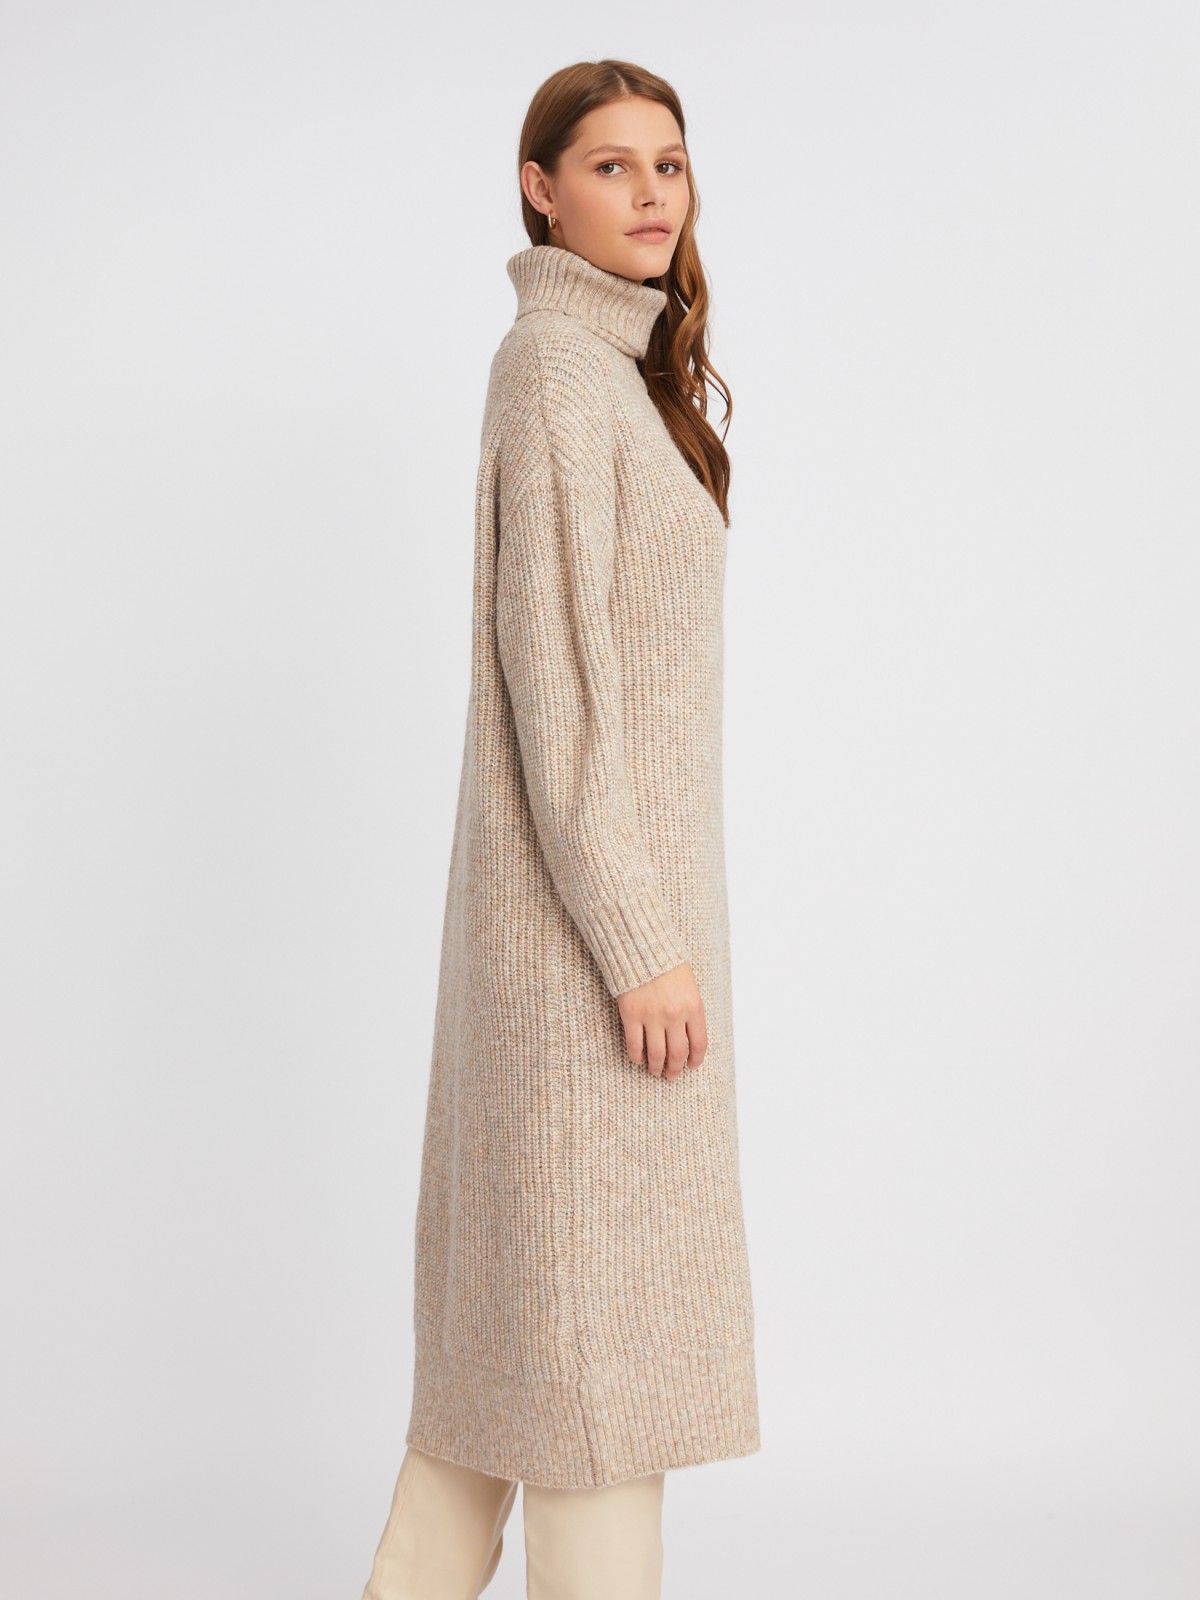 Вязаное платье-свитер длины миди с высоким горлом